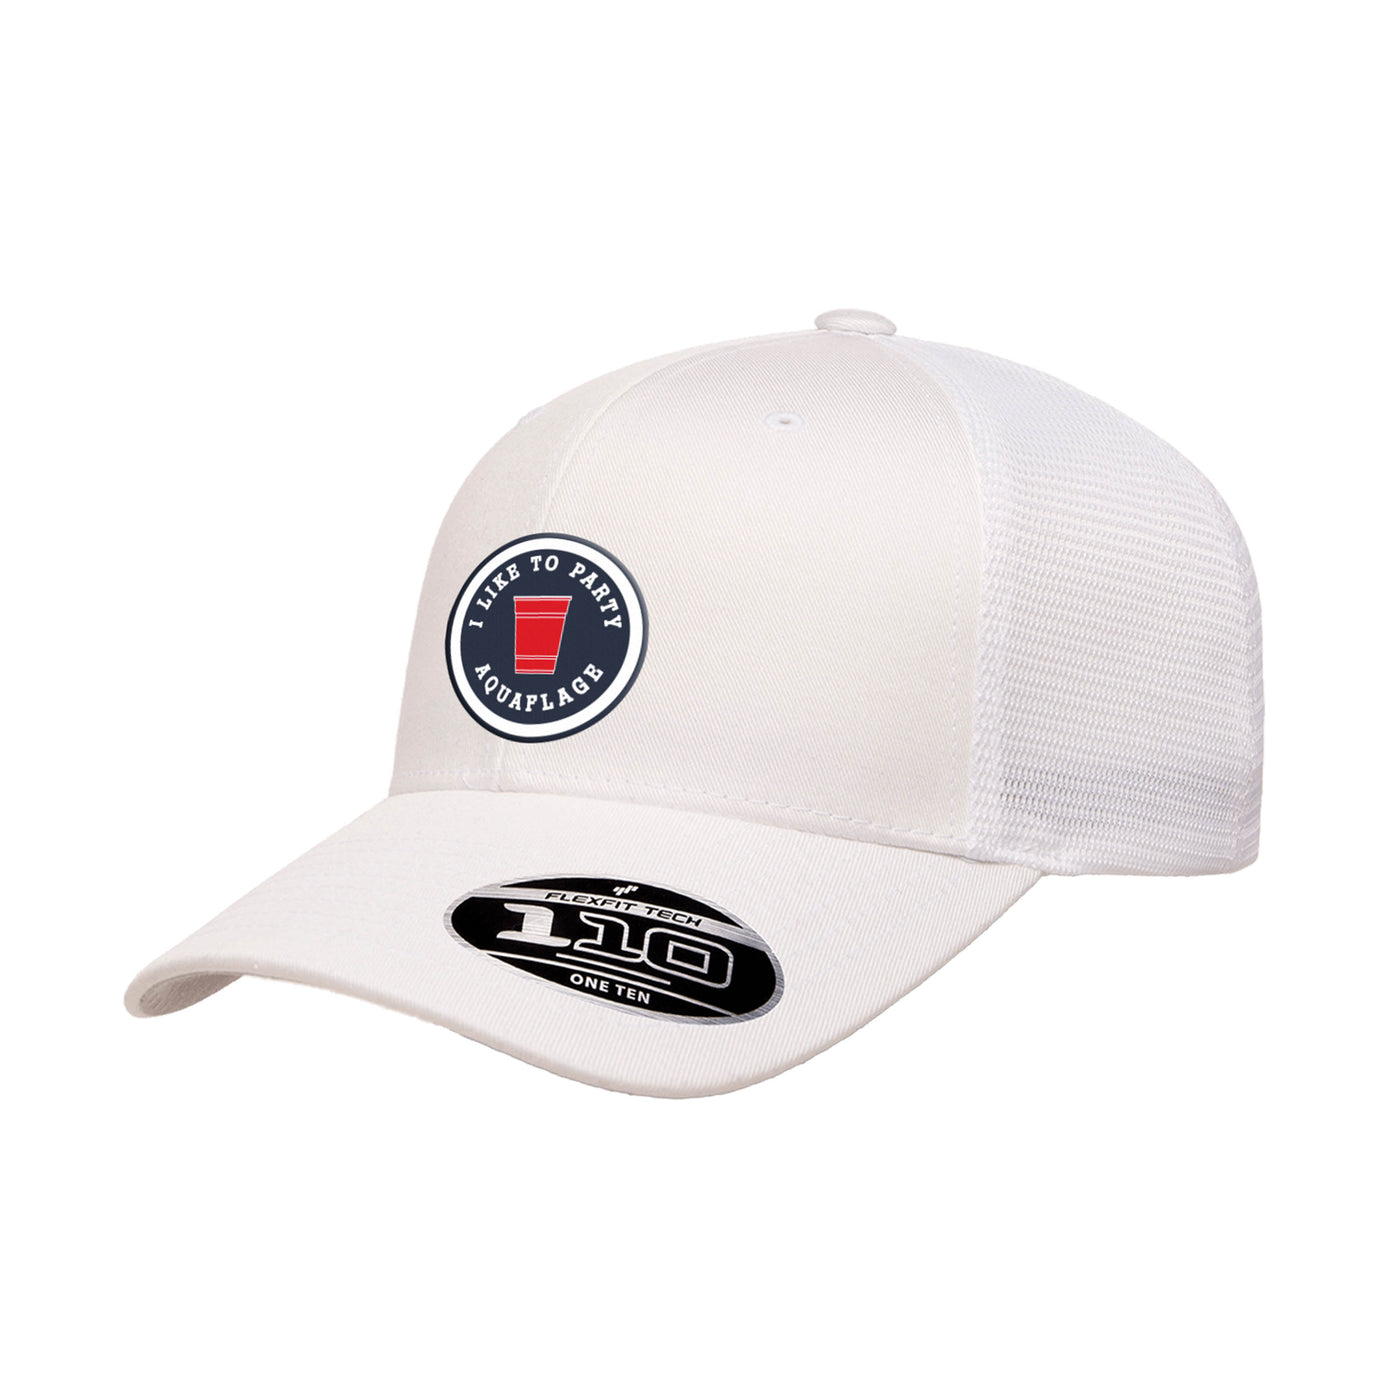 The Ty - All White Mesh Trucker Hat